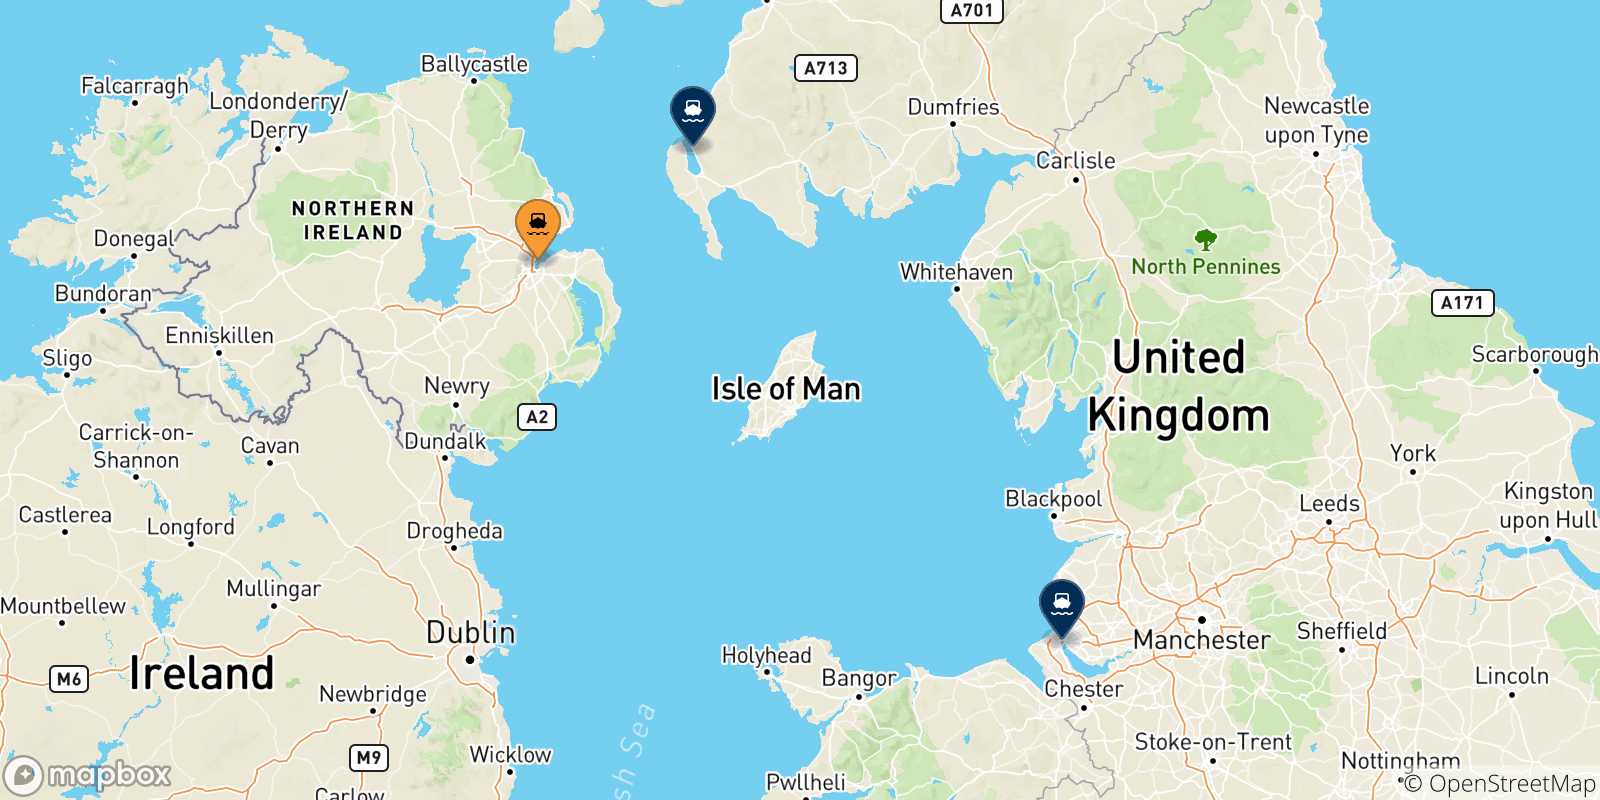 Mappa delle possibili rotte tra Belfast e il Regno Unito